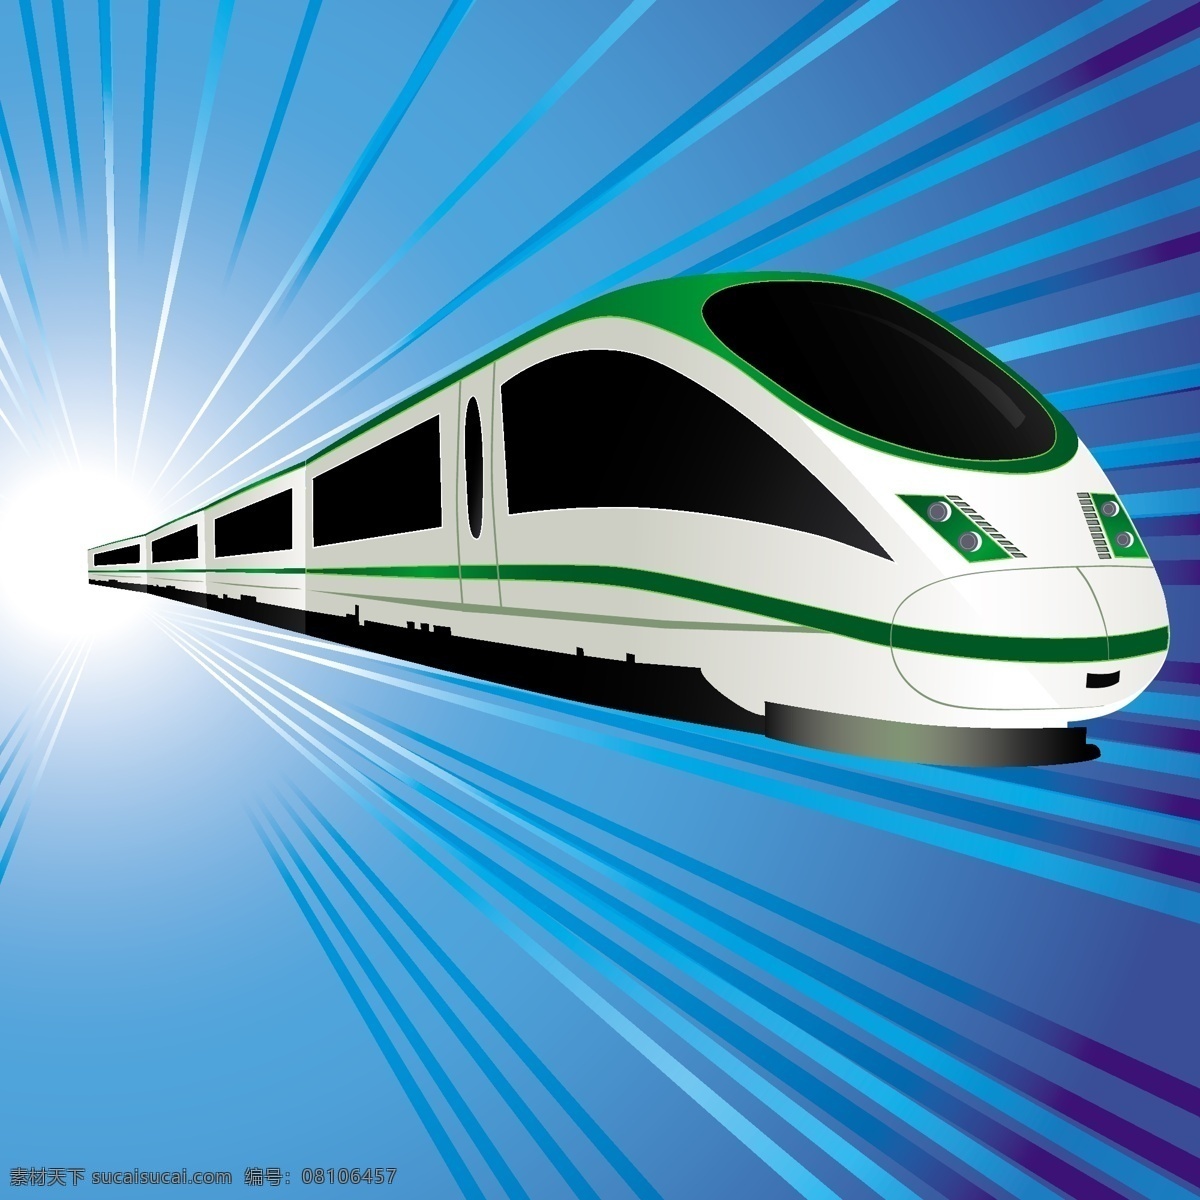 高速火车列车 高速 火车 高速列车 高铁 和谐号 列车 铁轨 轨道 交通工具 现代科技 矢量交通工具 矢量